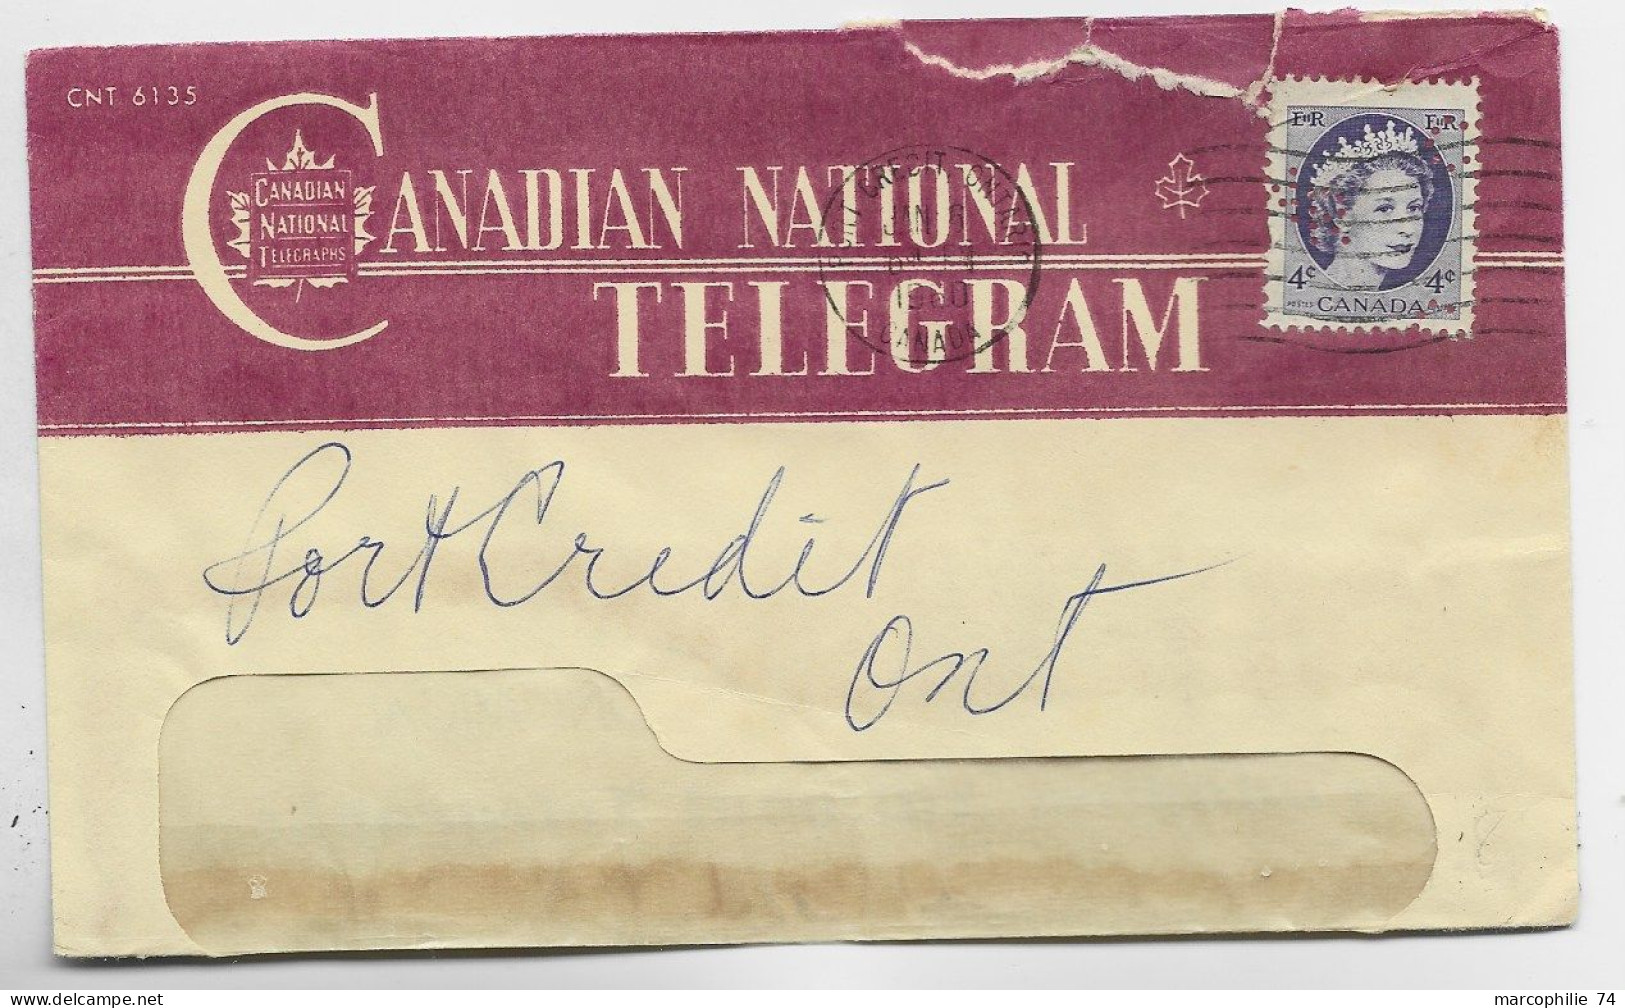 CANADA 4C ELISABETH PERFORE PERFIN LETTRE COVER CANADIA NATIONAL TELEGRAM CRECIT ONTARIO 1960 - Perfin